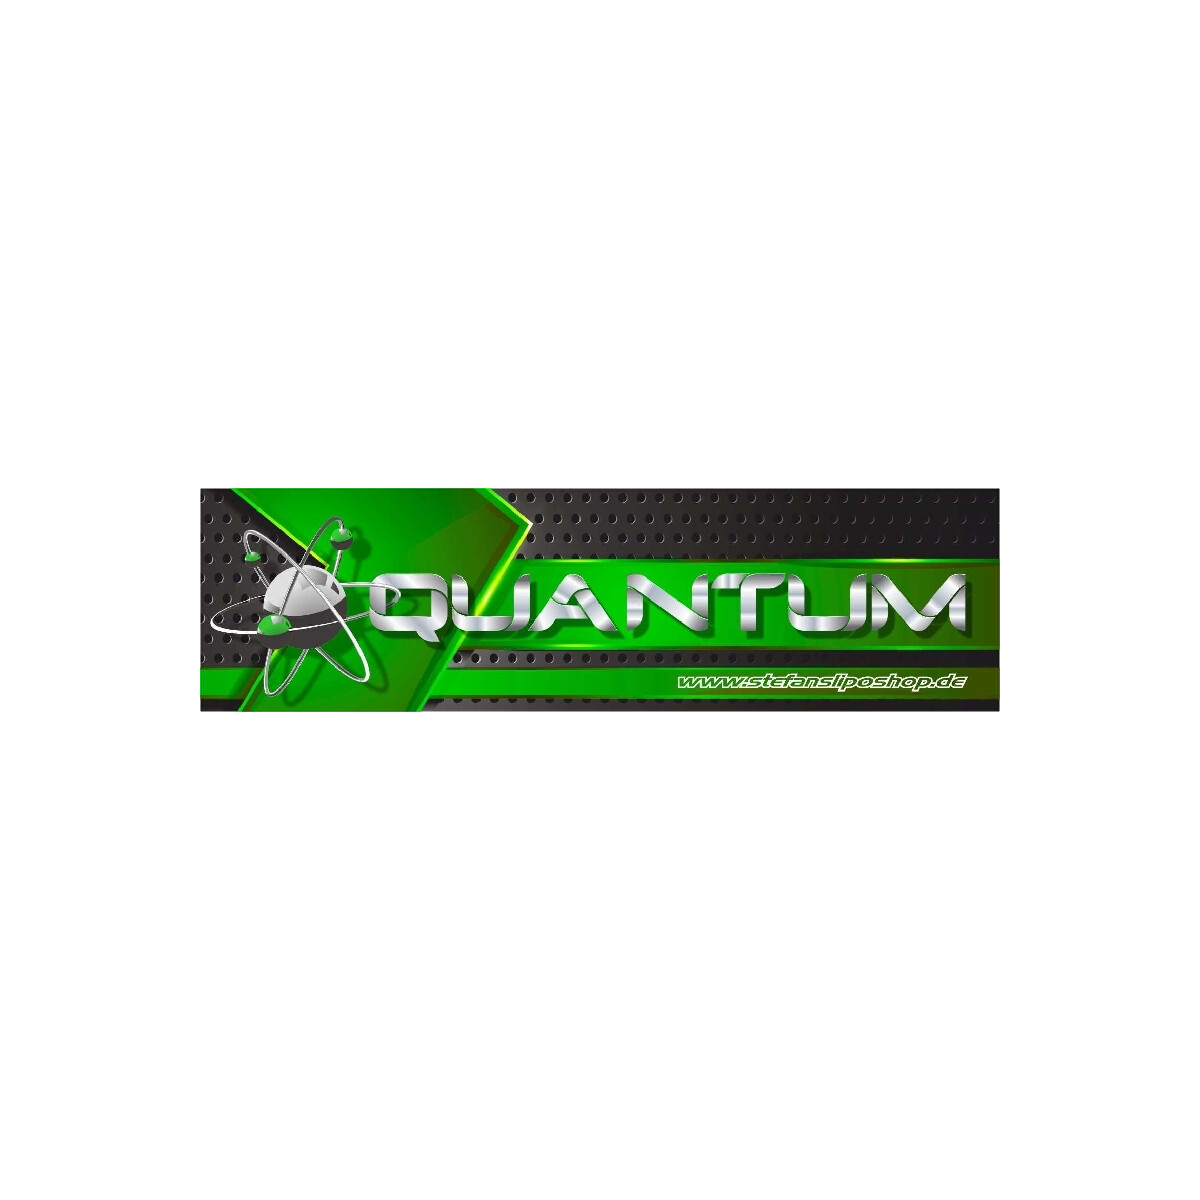 SLS Quantum 500mAh 3S1P 11,1V 30C/60C